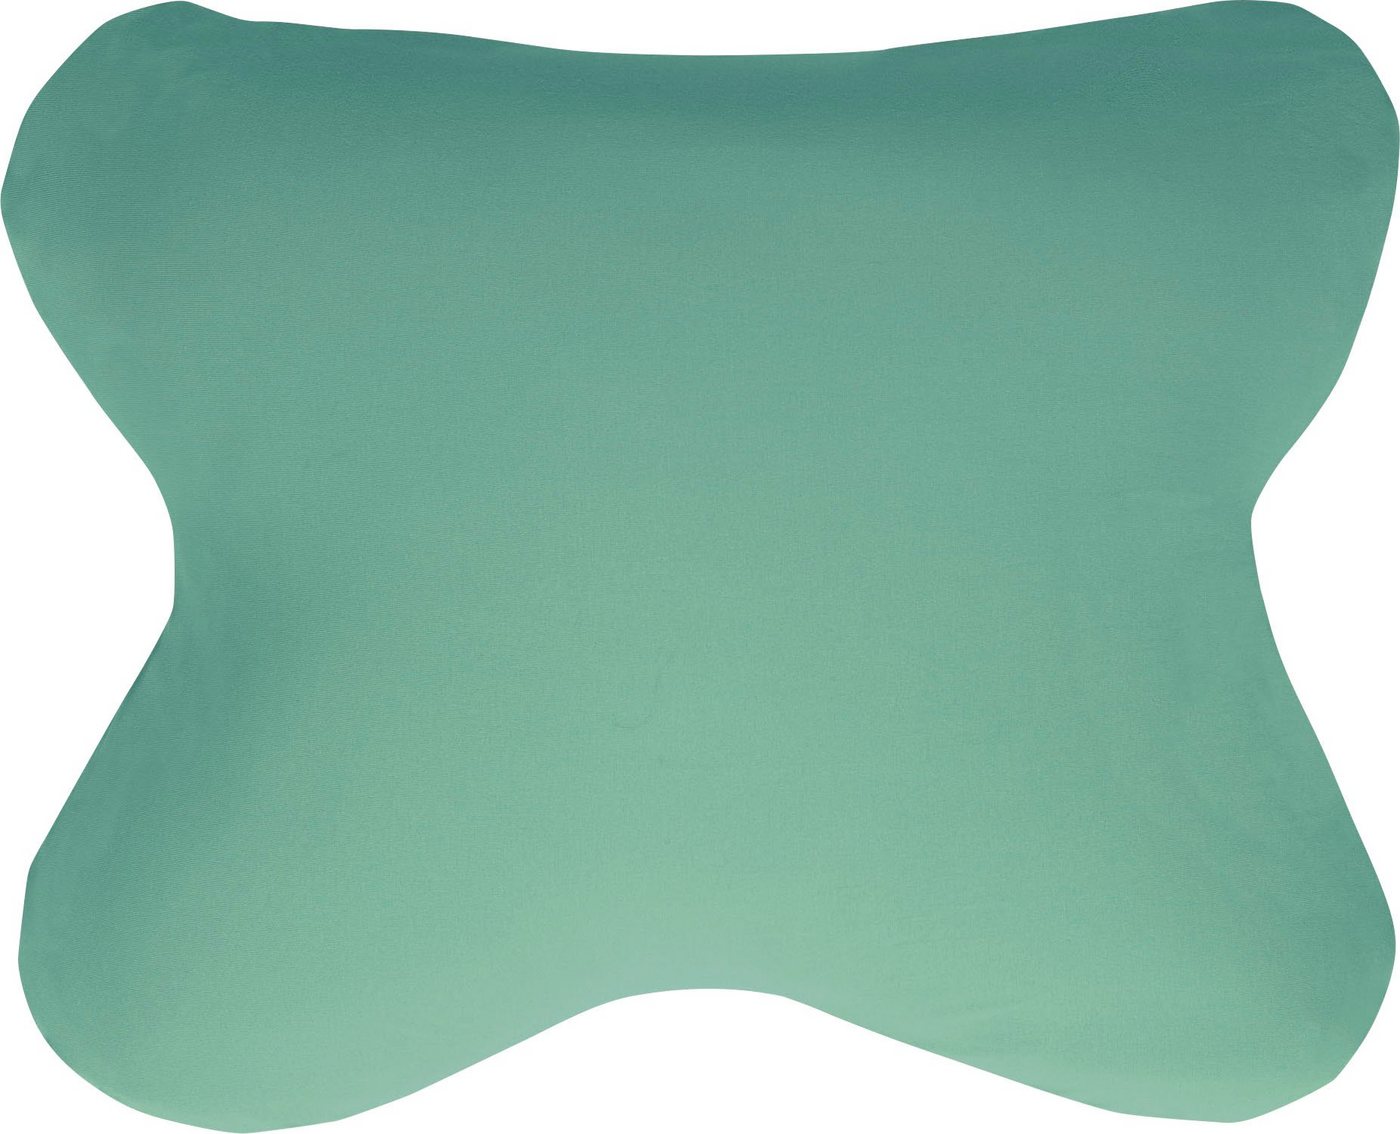 Kissenbezug Ombracio Edel-Zwirn-Jersey, Kneer (1 Stück), Kissenbezug für Stützkissen, flexible Kissenhülle mit Reißverschluss von Kneer